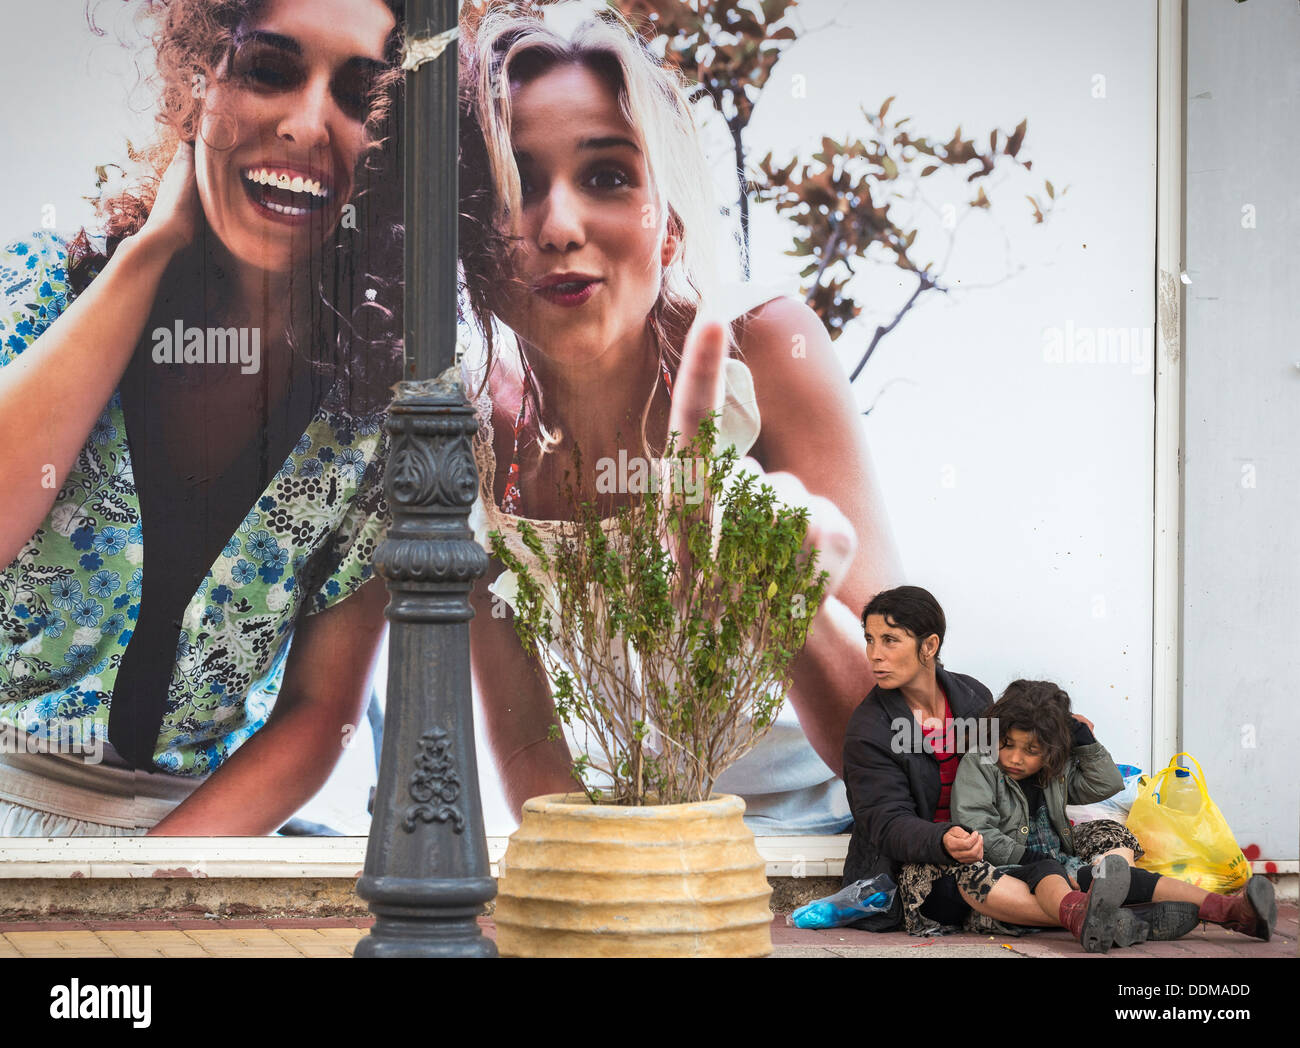 Femme et la mendicité des enfants roms à côté d'un panneau publicitaire Publicité dans la ville provinciale de Rovetta, Péloponnèse, Grèce Banque D'Images